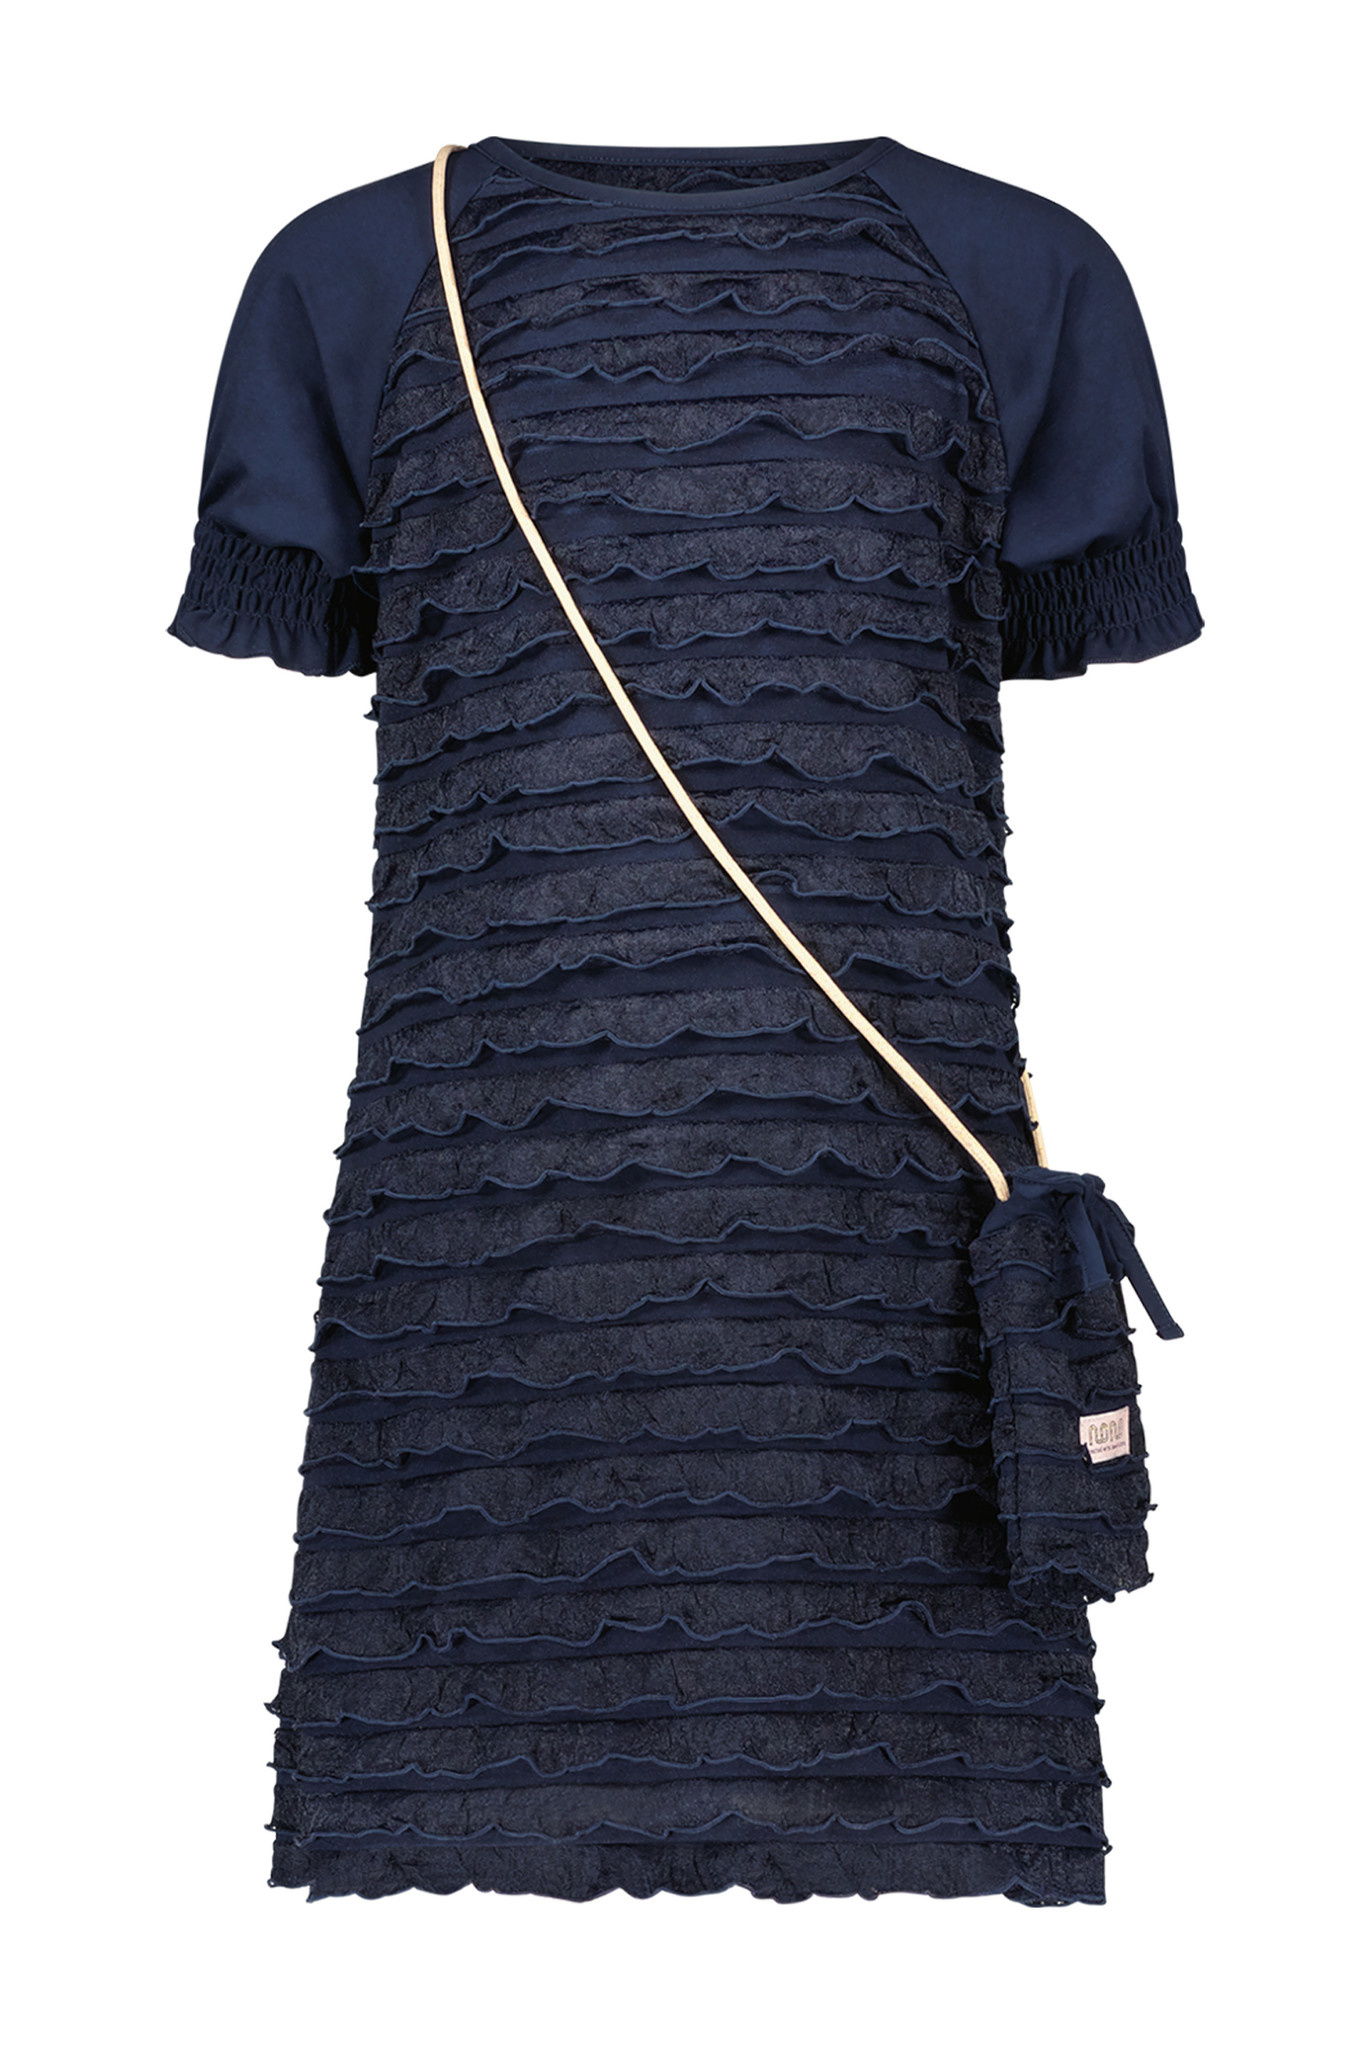 NoNo Meisjes jurk ruffel met tasje - Maisa - Navy blauw